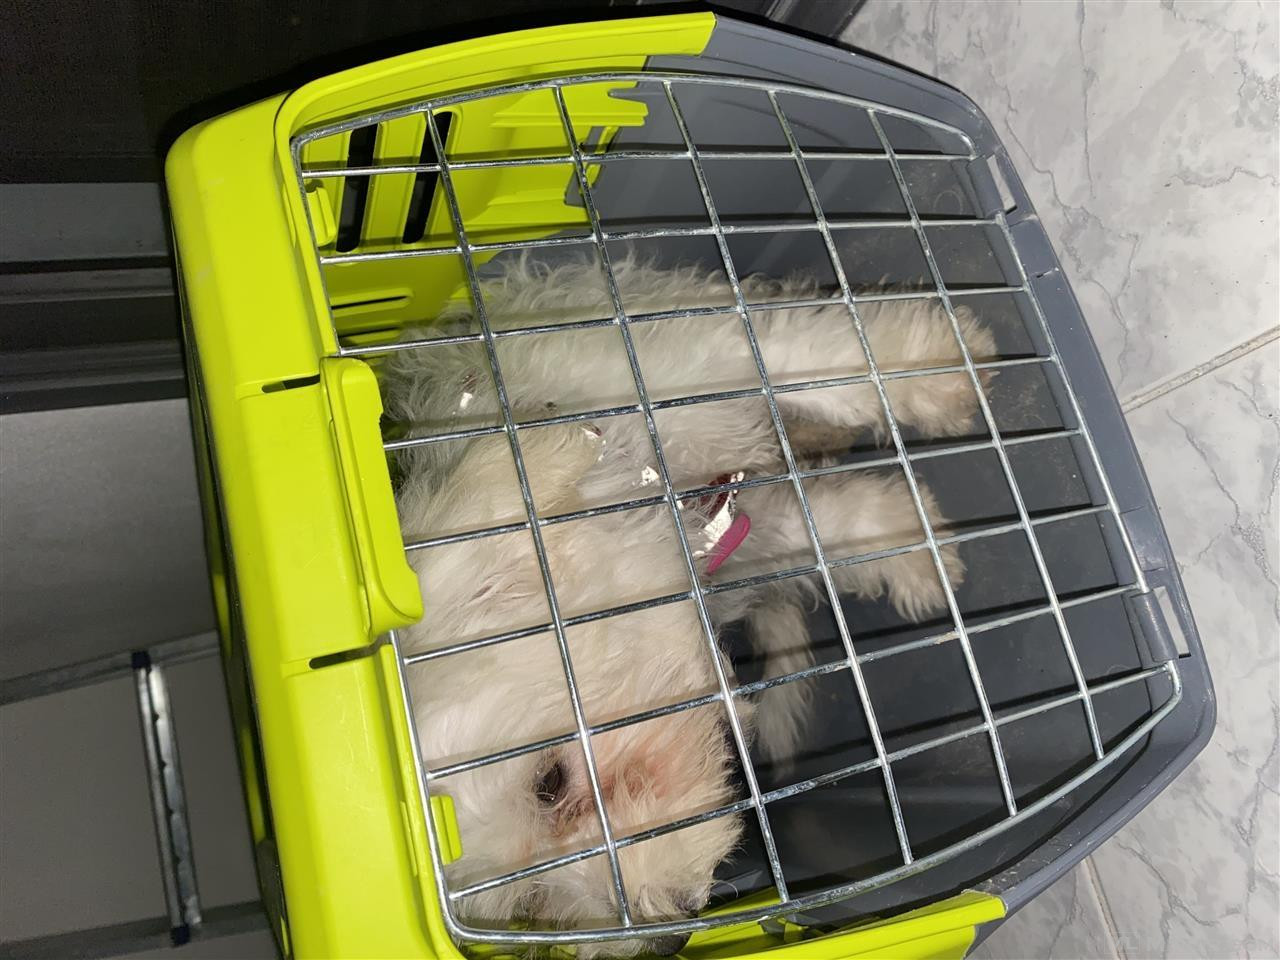 Shitet qeni maltez 80€ i mbajtur ne shpi i vaksinuar